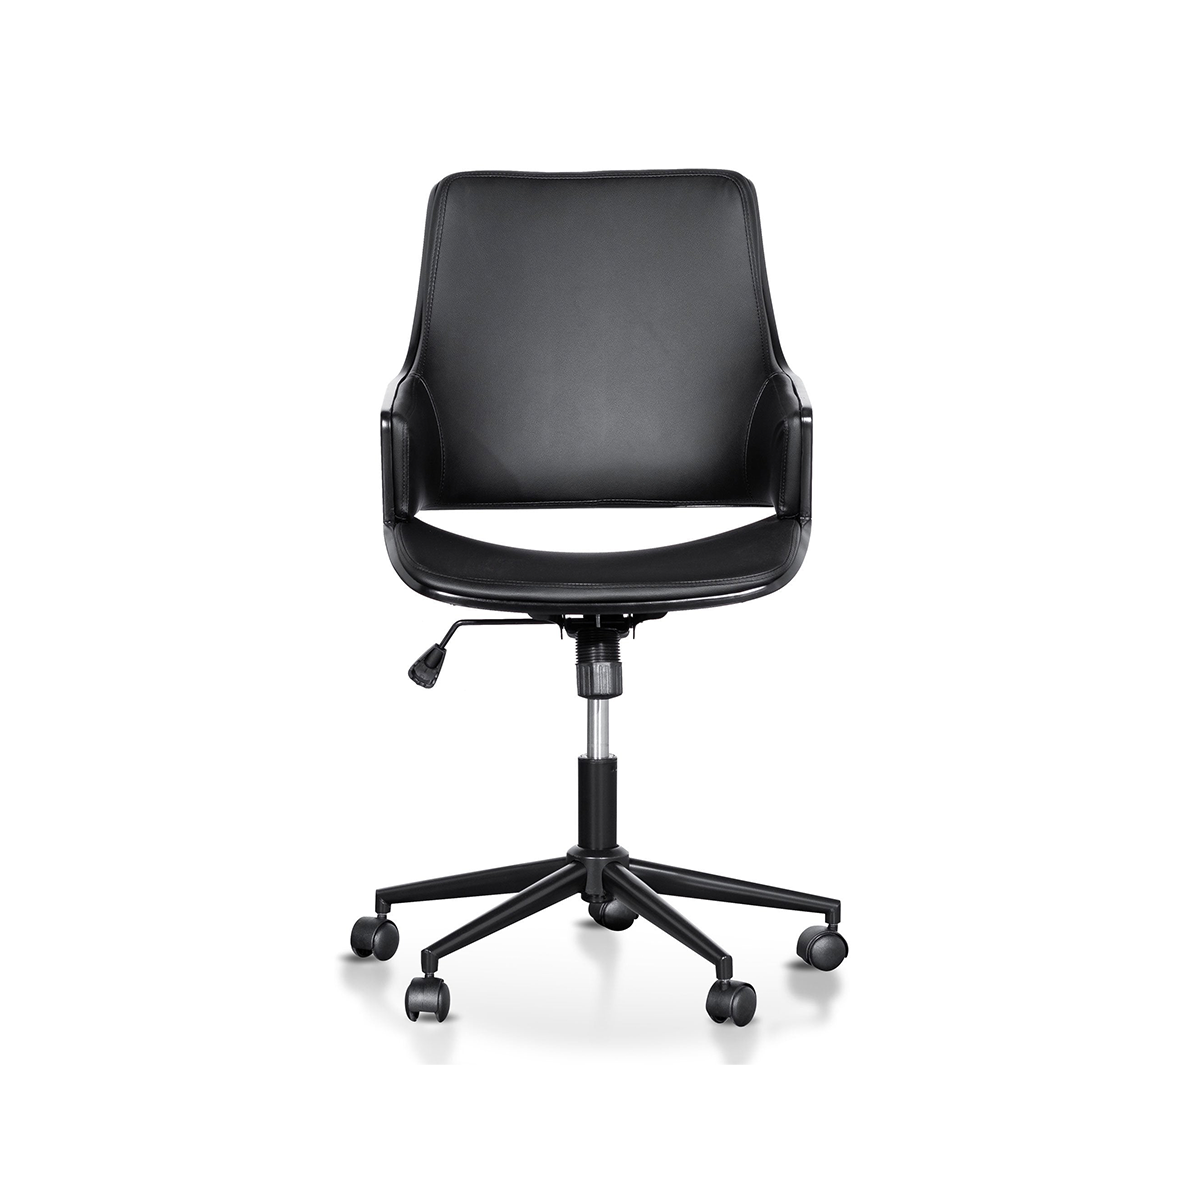 FondHouse Bokea Office Chair - Black